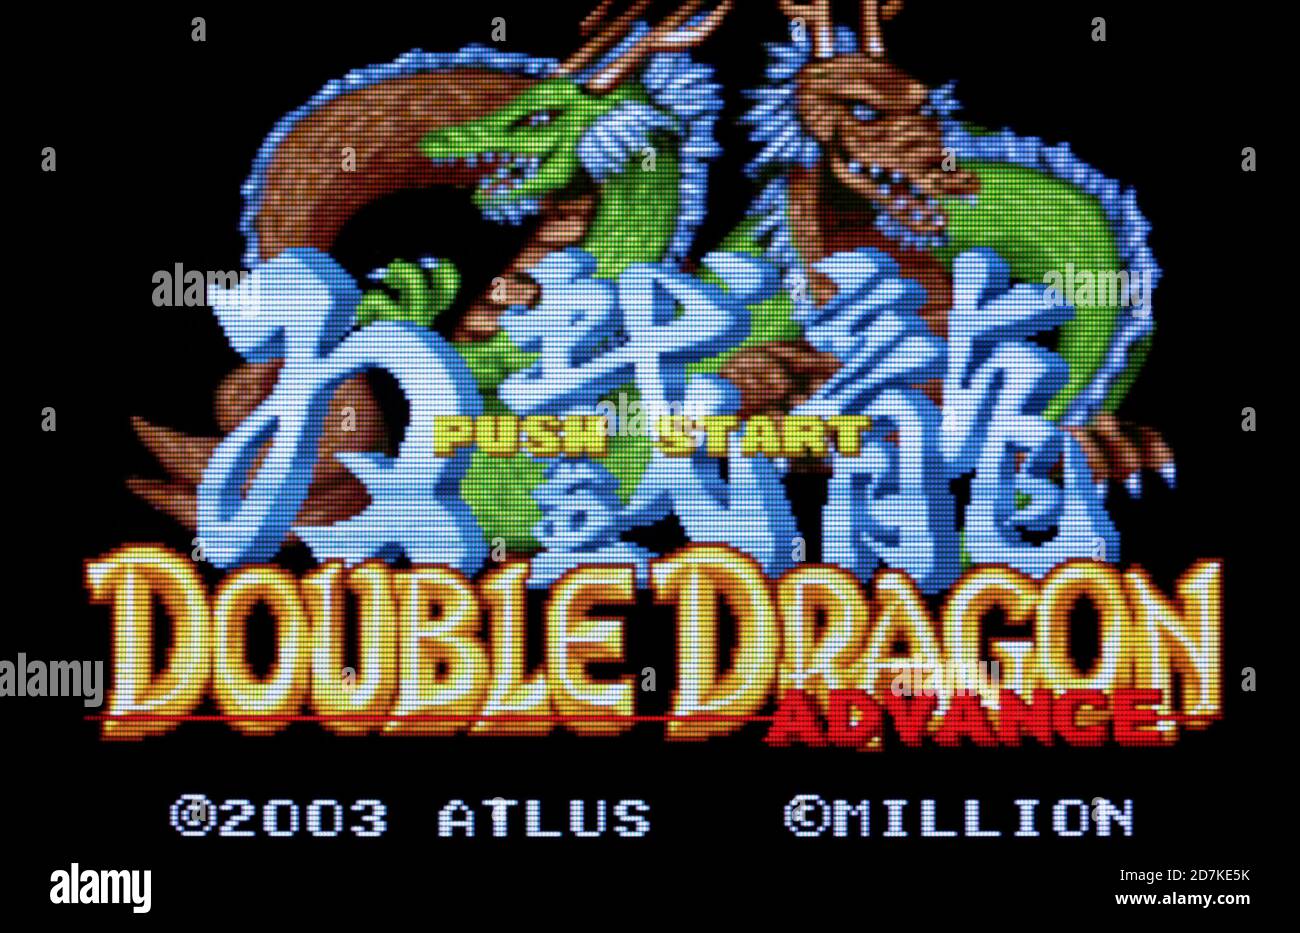 Double Dragon 1987 Arcade MAME  Full game walkthrough 